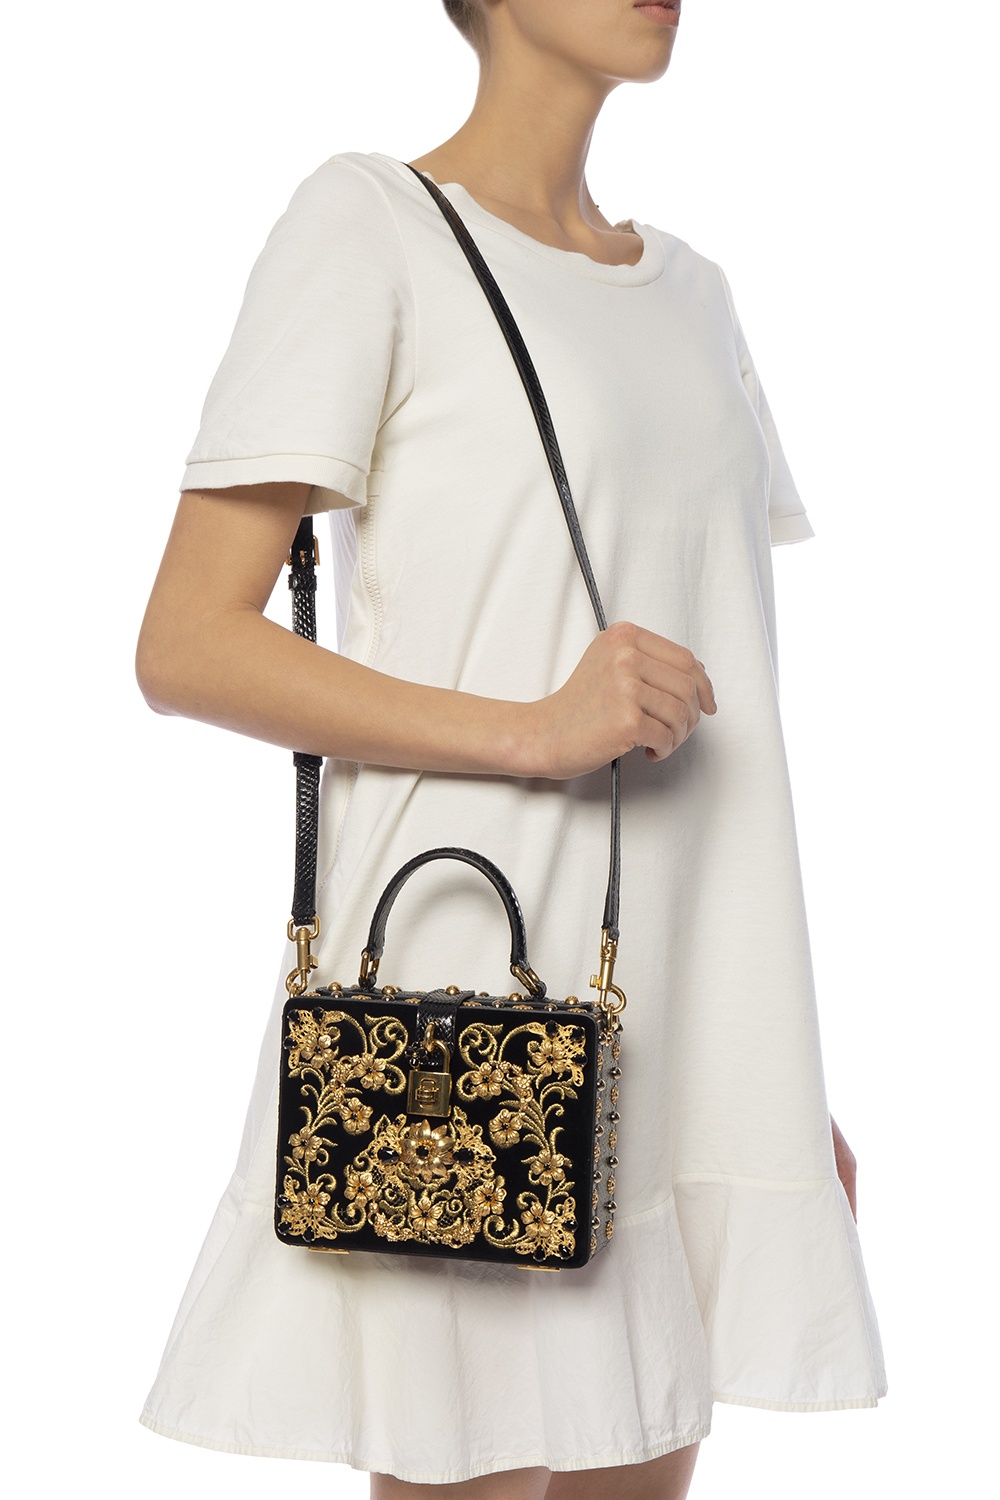 Black 'Box' embellished shoulder bag Dolce & Gabbana - Vitkac GB